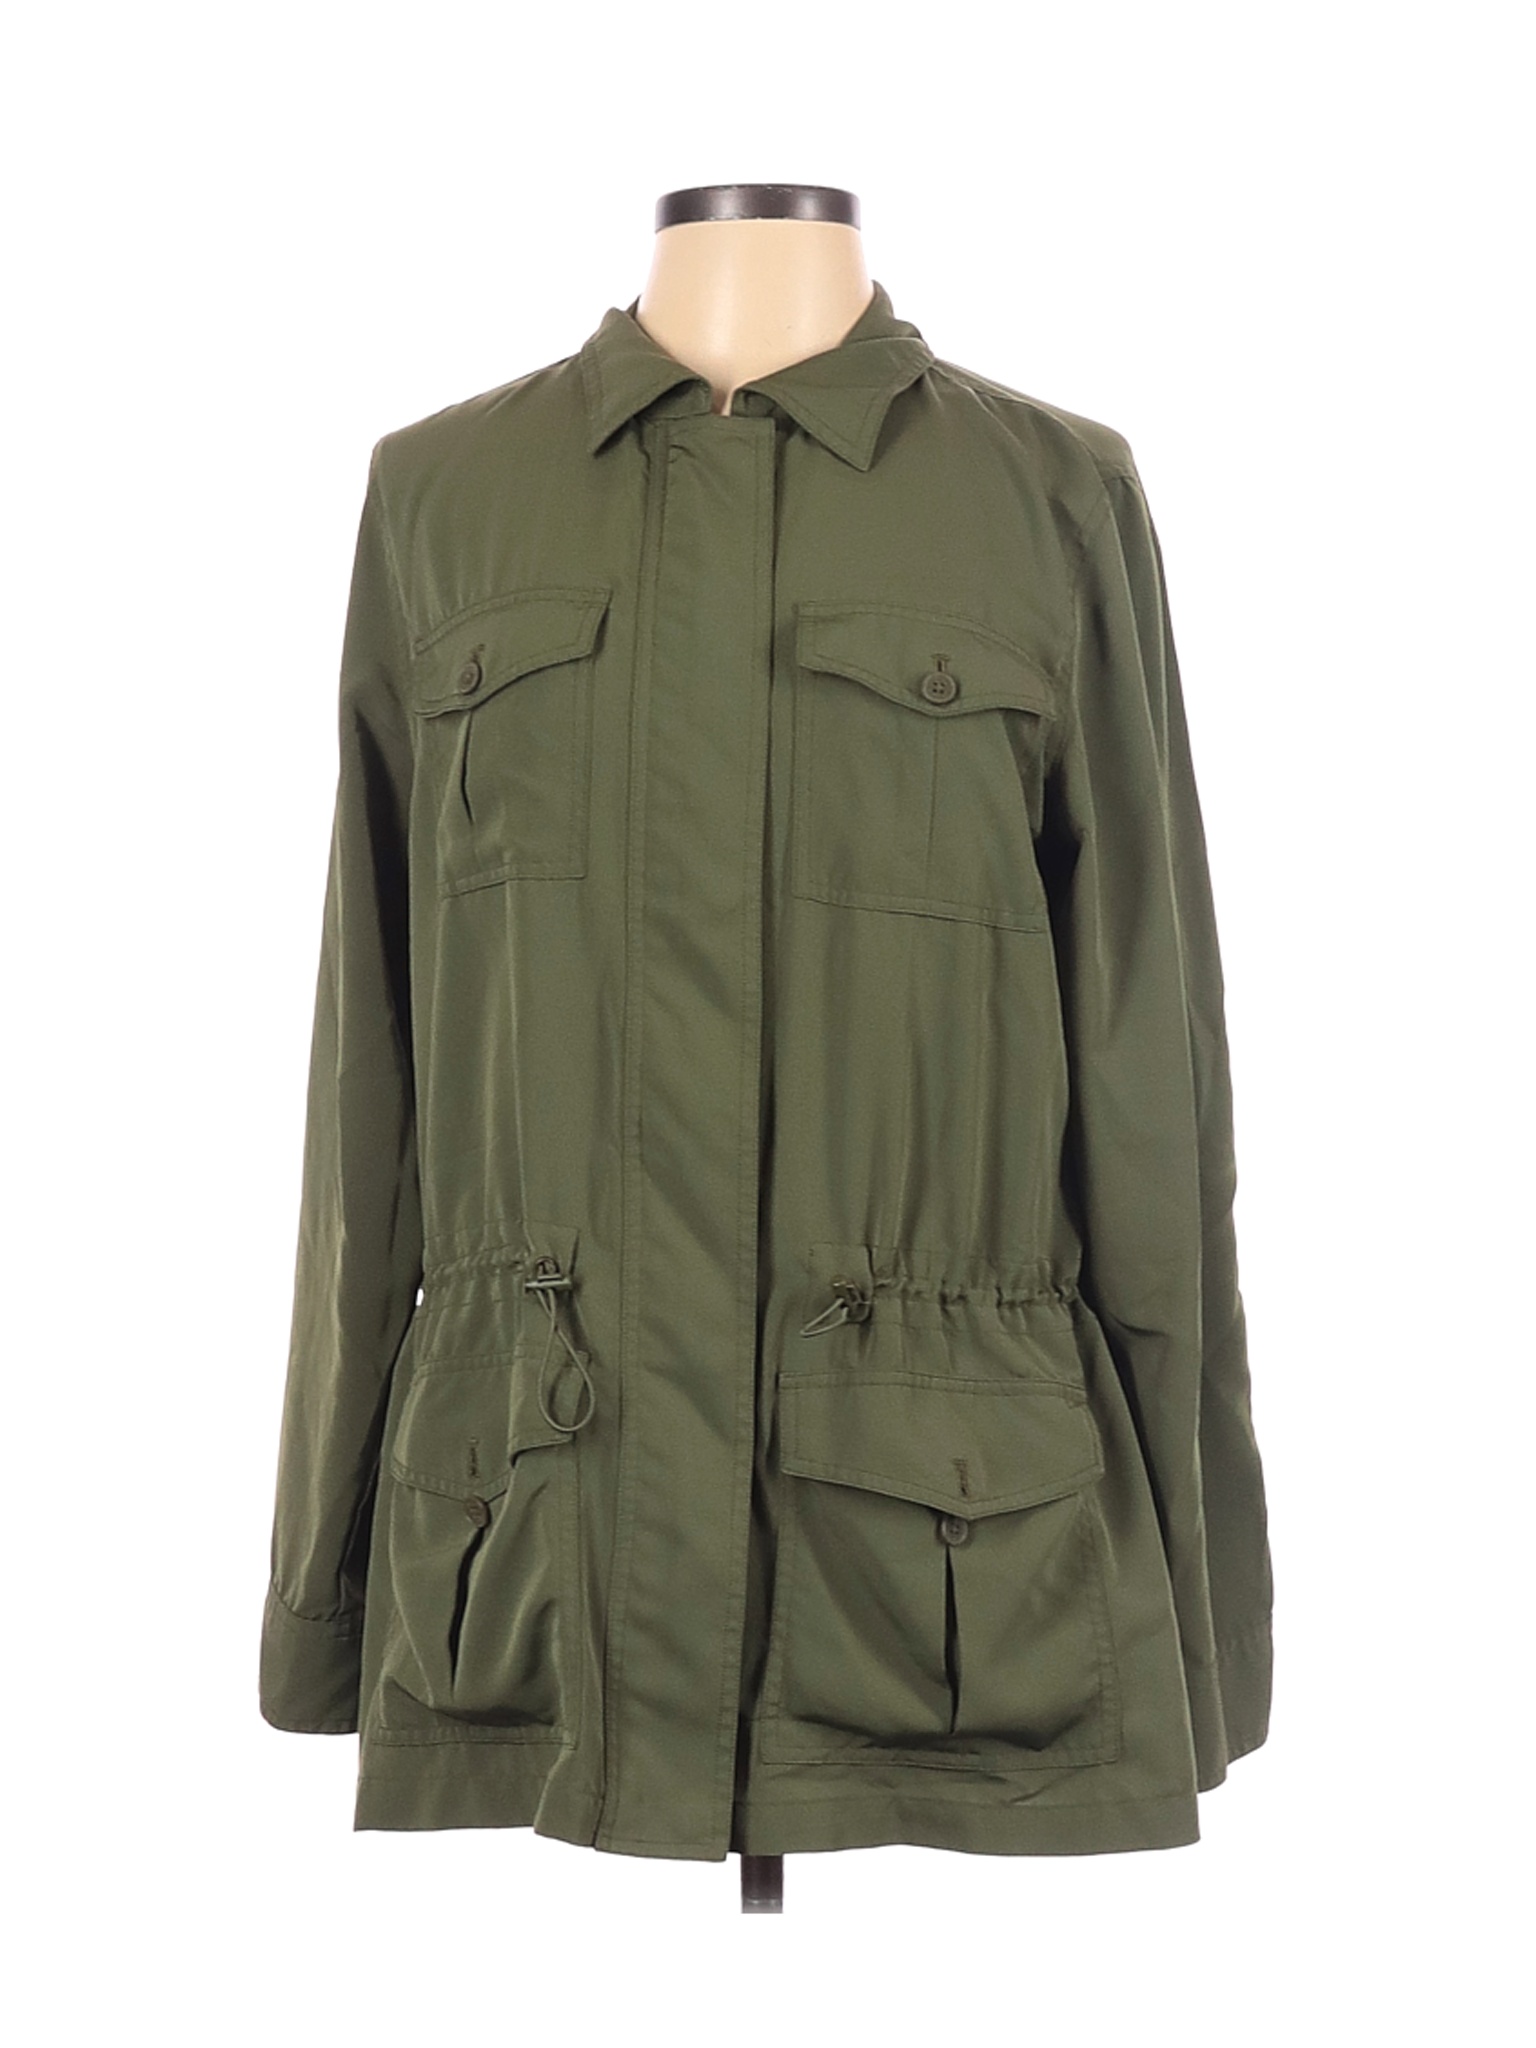 Chaps Women Green Jacket L | eBay